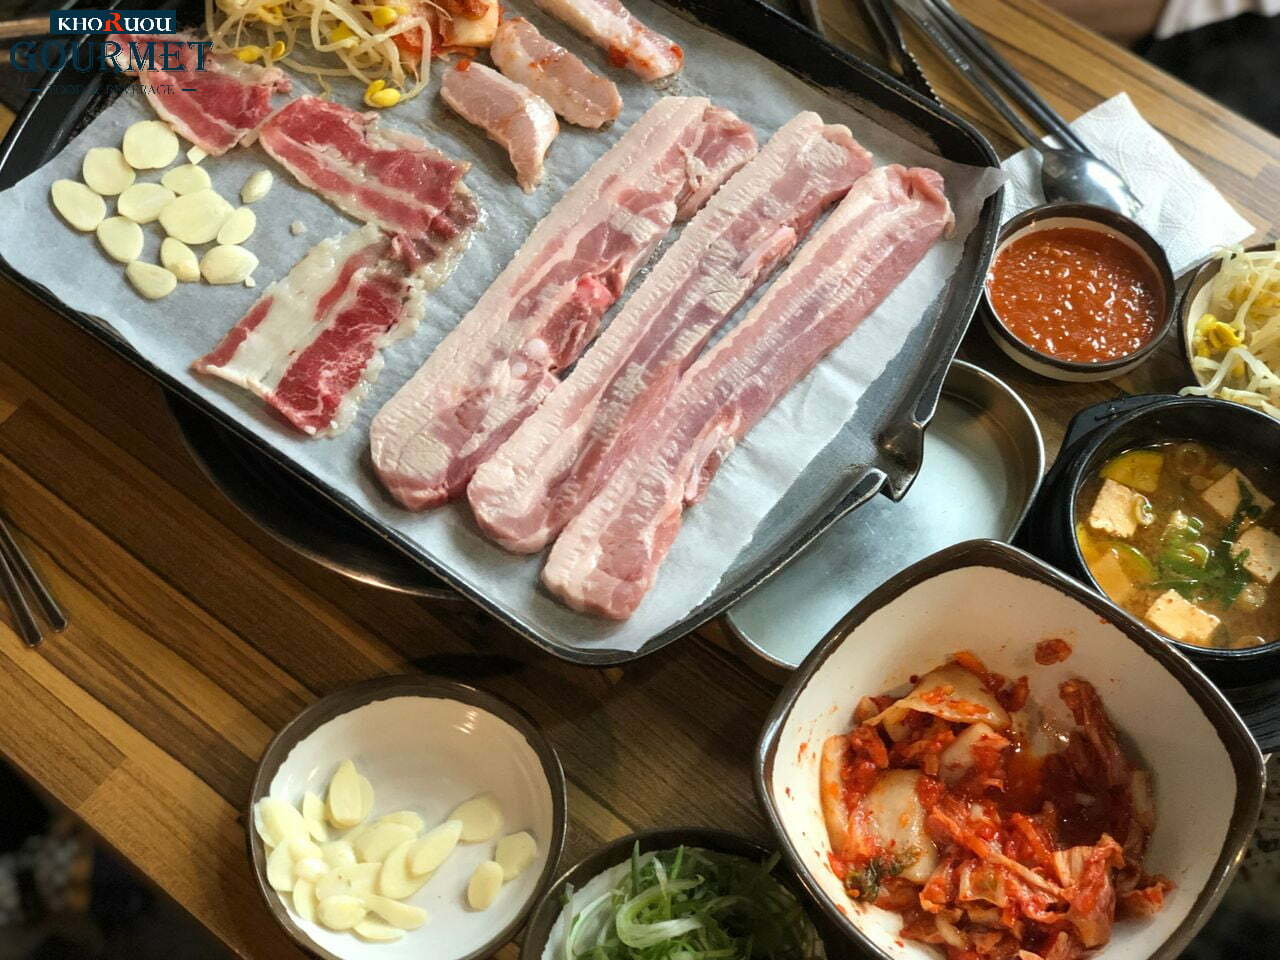 Nếu bạn là một tín đồ của phim Hàn Quốc, chắc chắn sẽ biết đến các món ăn thịt nướng. Và Ogyeopsal cũng là một trong những loại thịt nướng, bao gồm cả phần thịt và da heo. Ăn kèm cùng rau kinh giới, kim chi và tương ớt